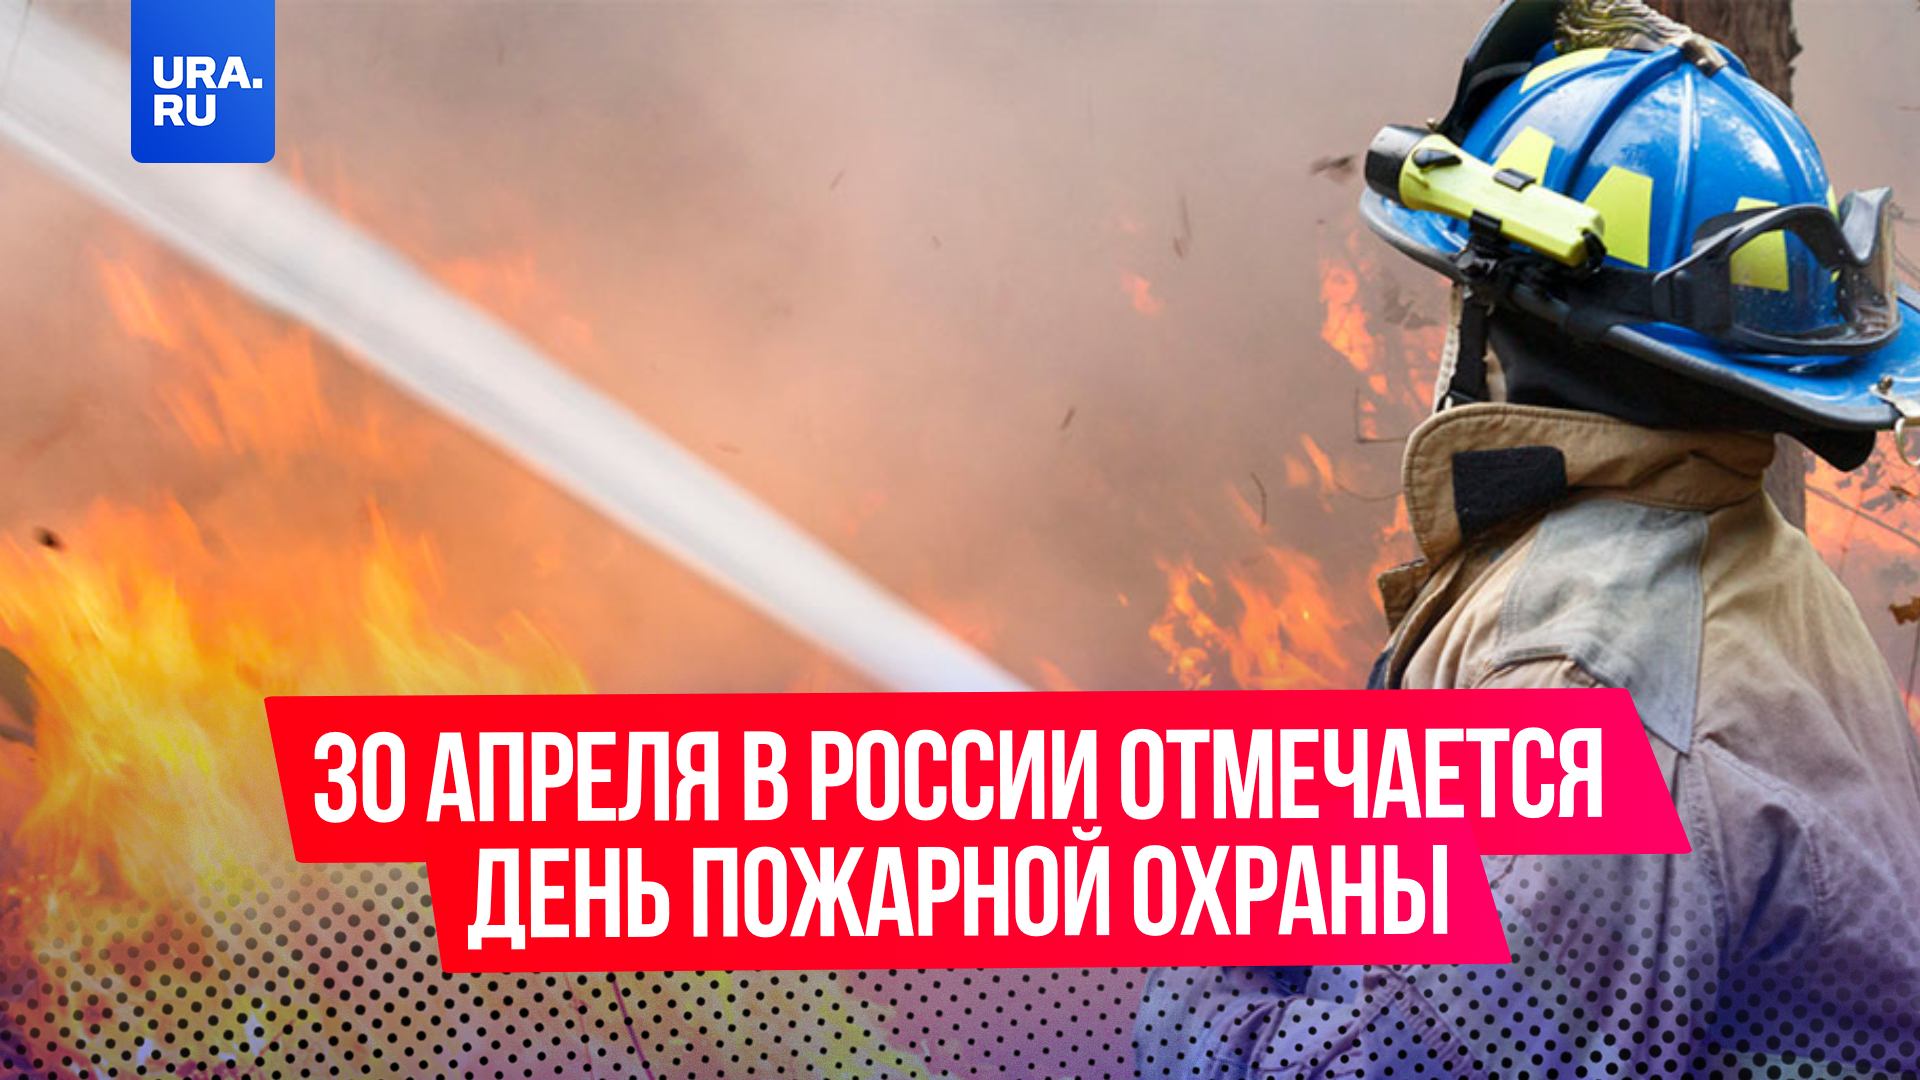 30 апреля в России отмечается День пожарной охраны